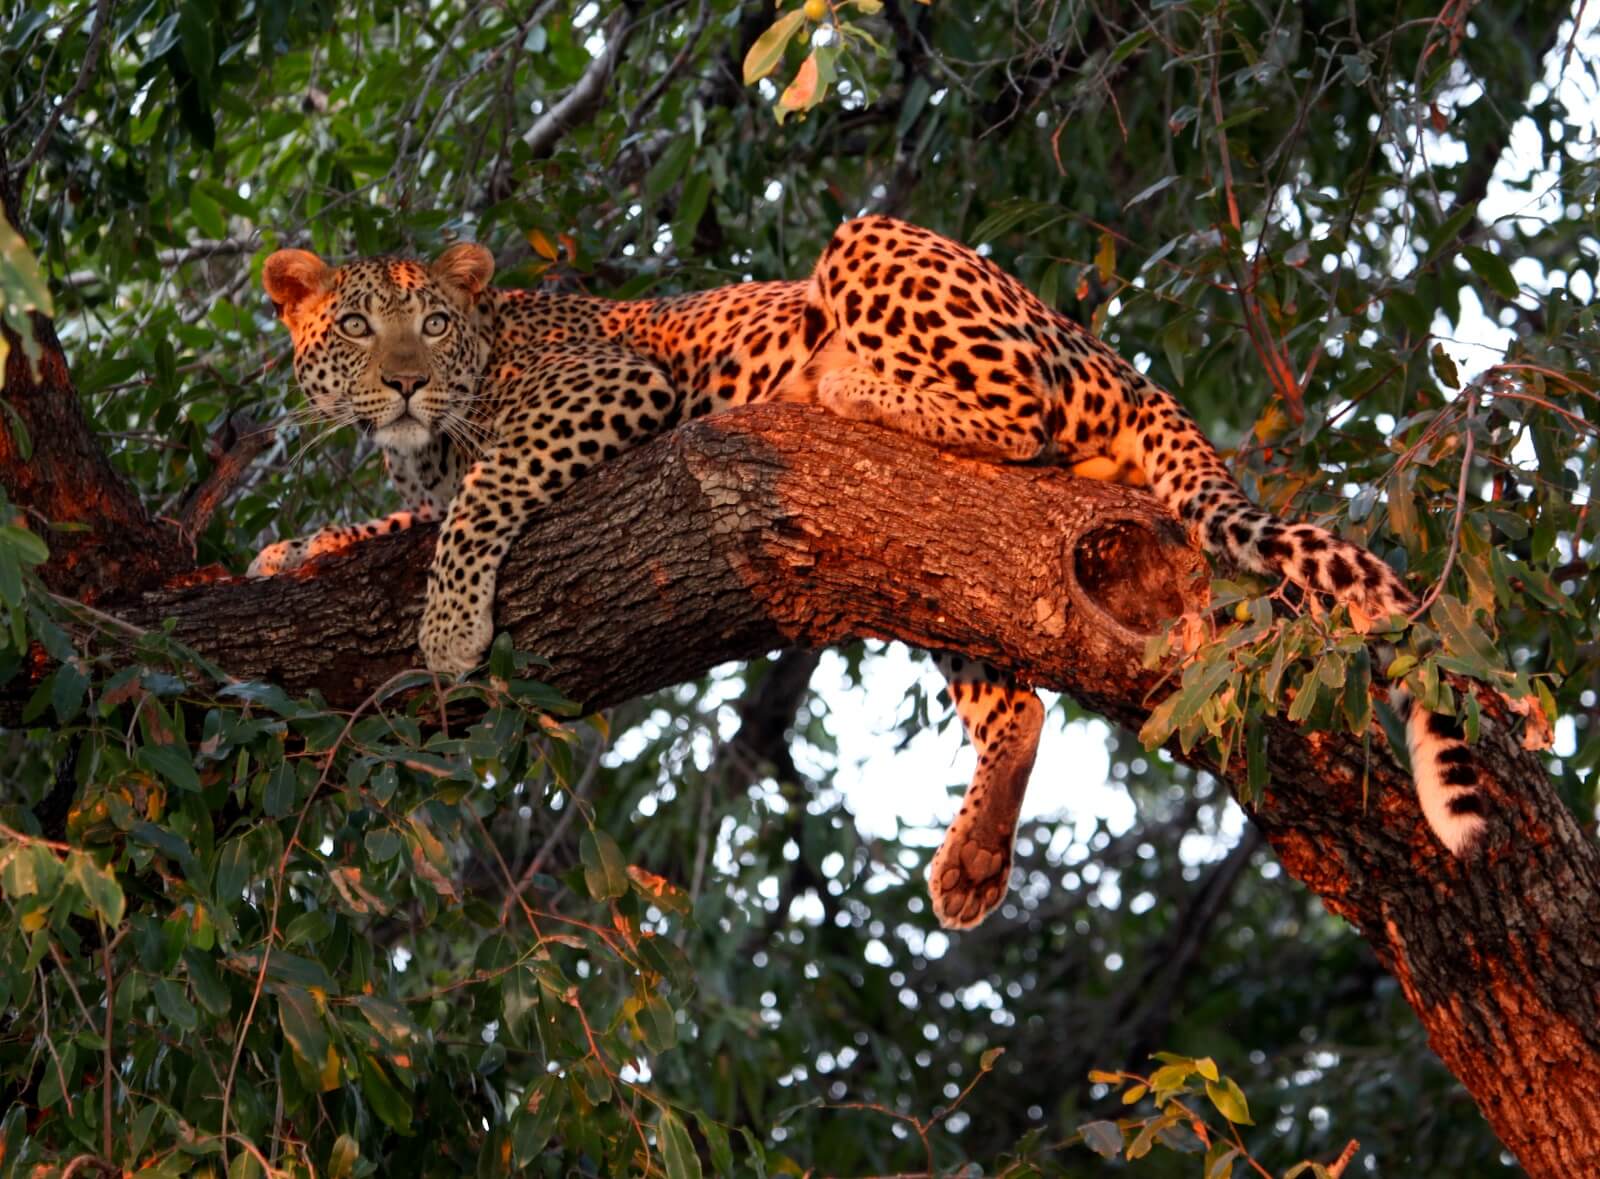 Jurvetson,Steve-Okavango-Leopard3 - 